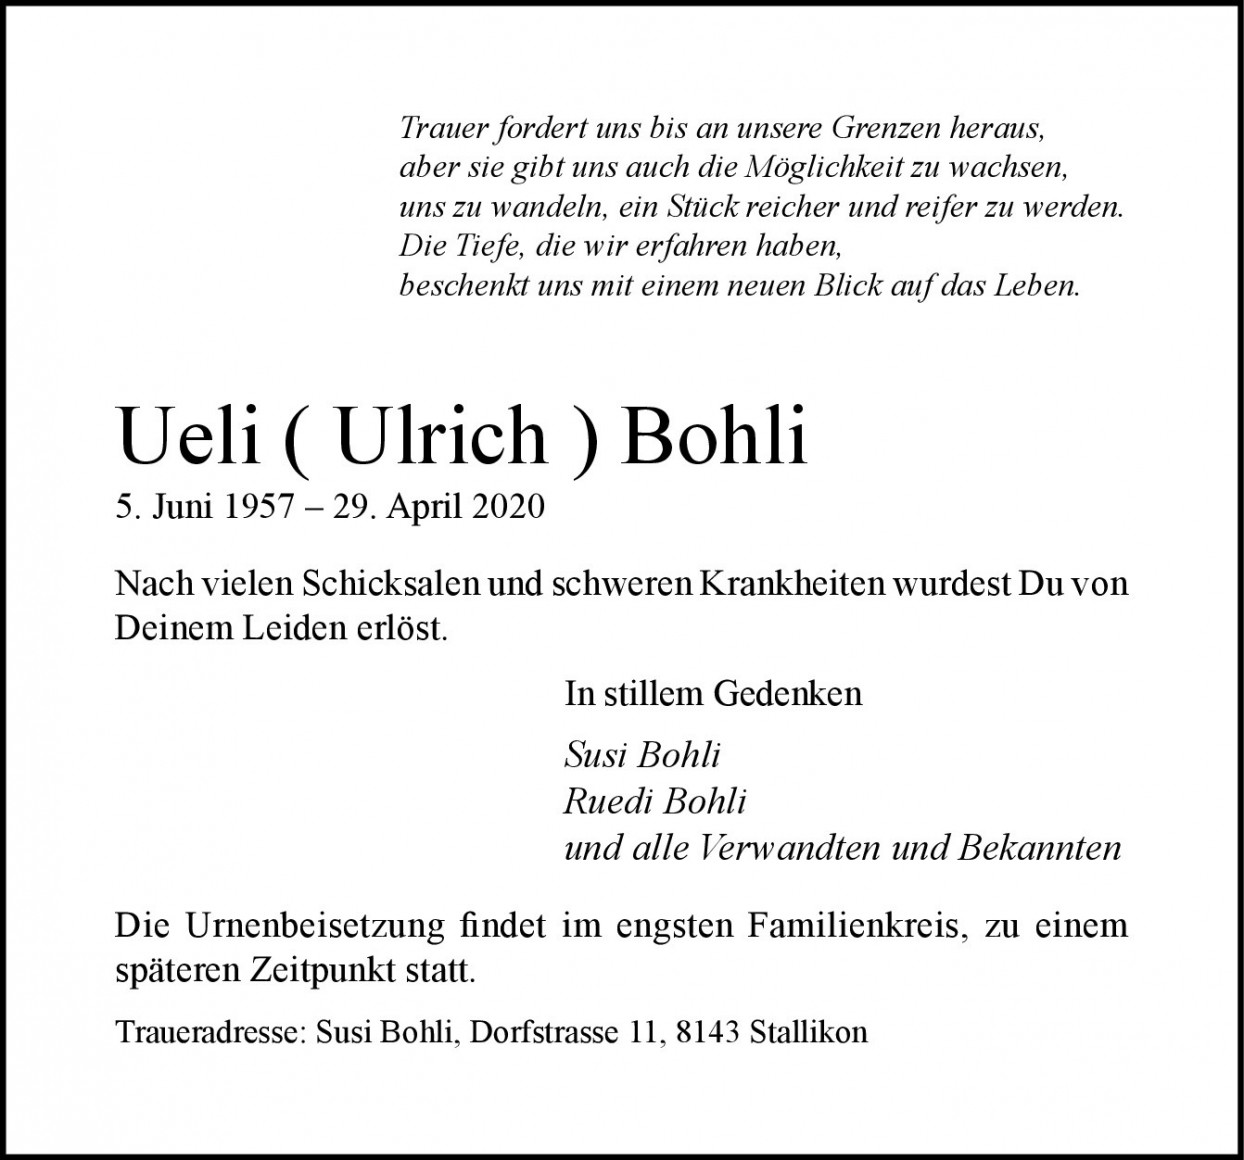 Ulrich Bohli